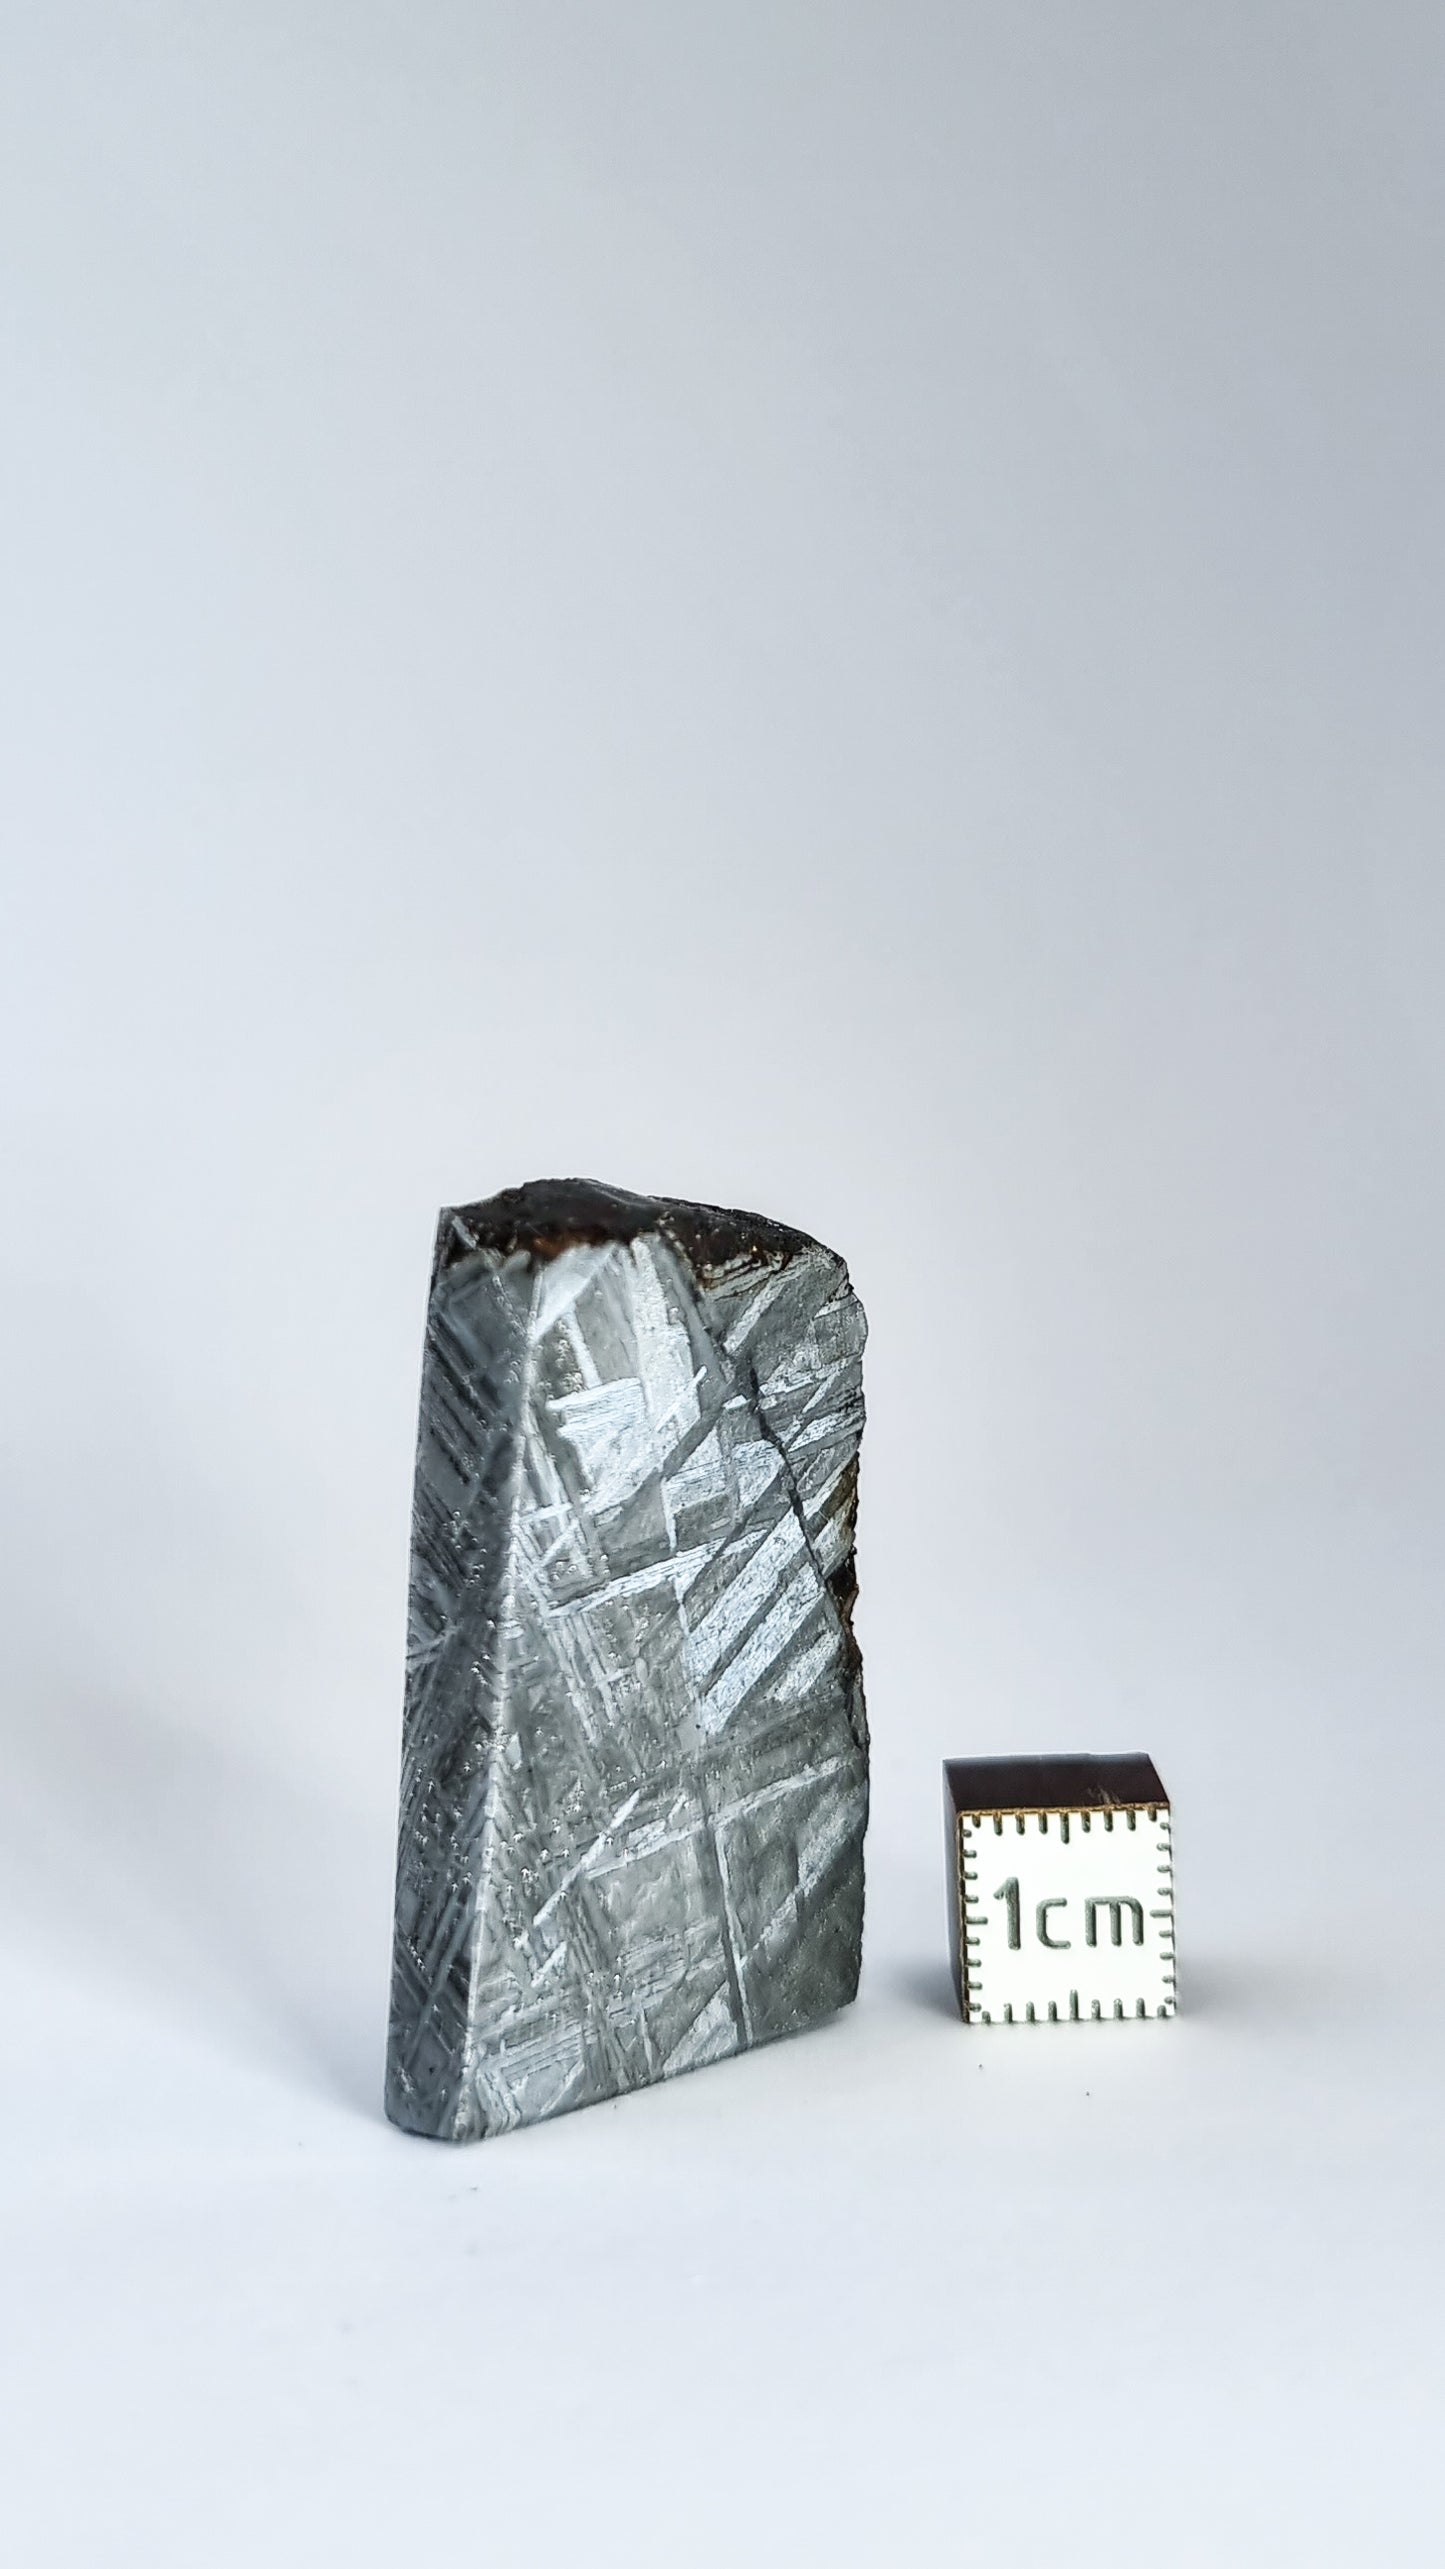 Muonionalusta meteorite, Sweden. Slice 41.47g